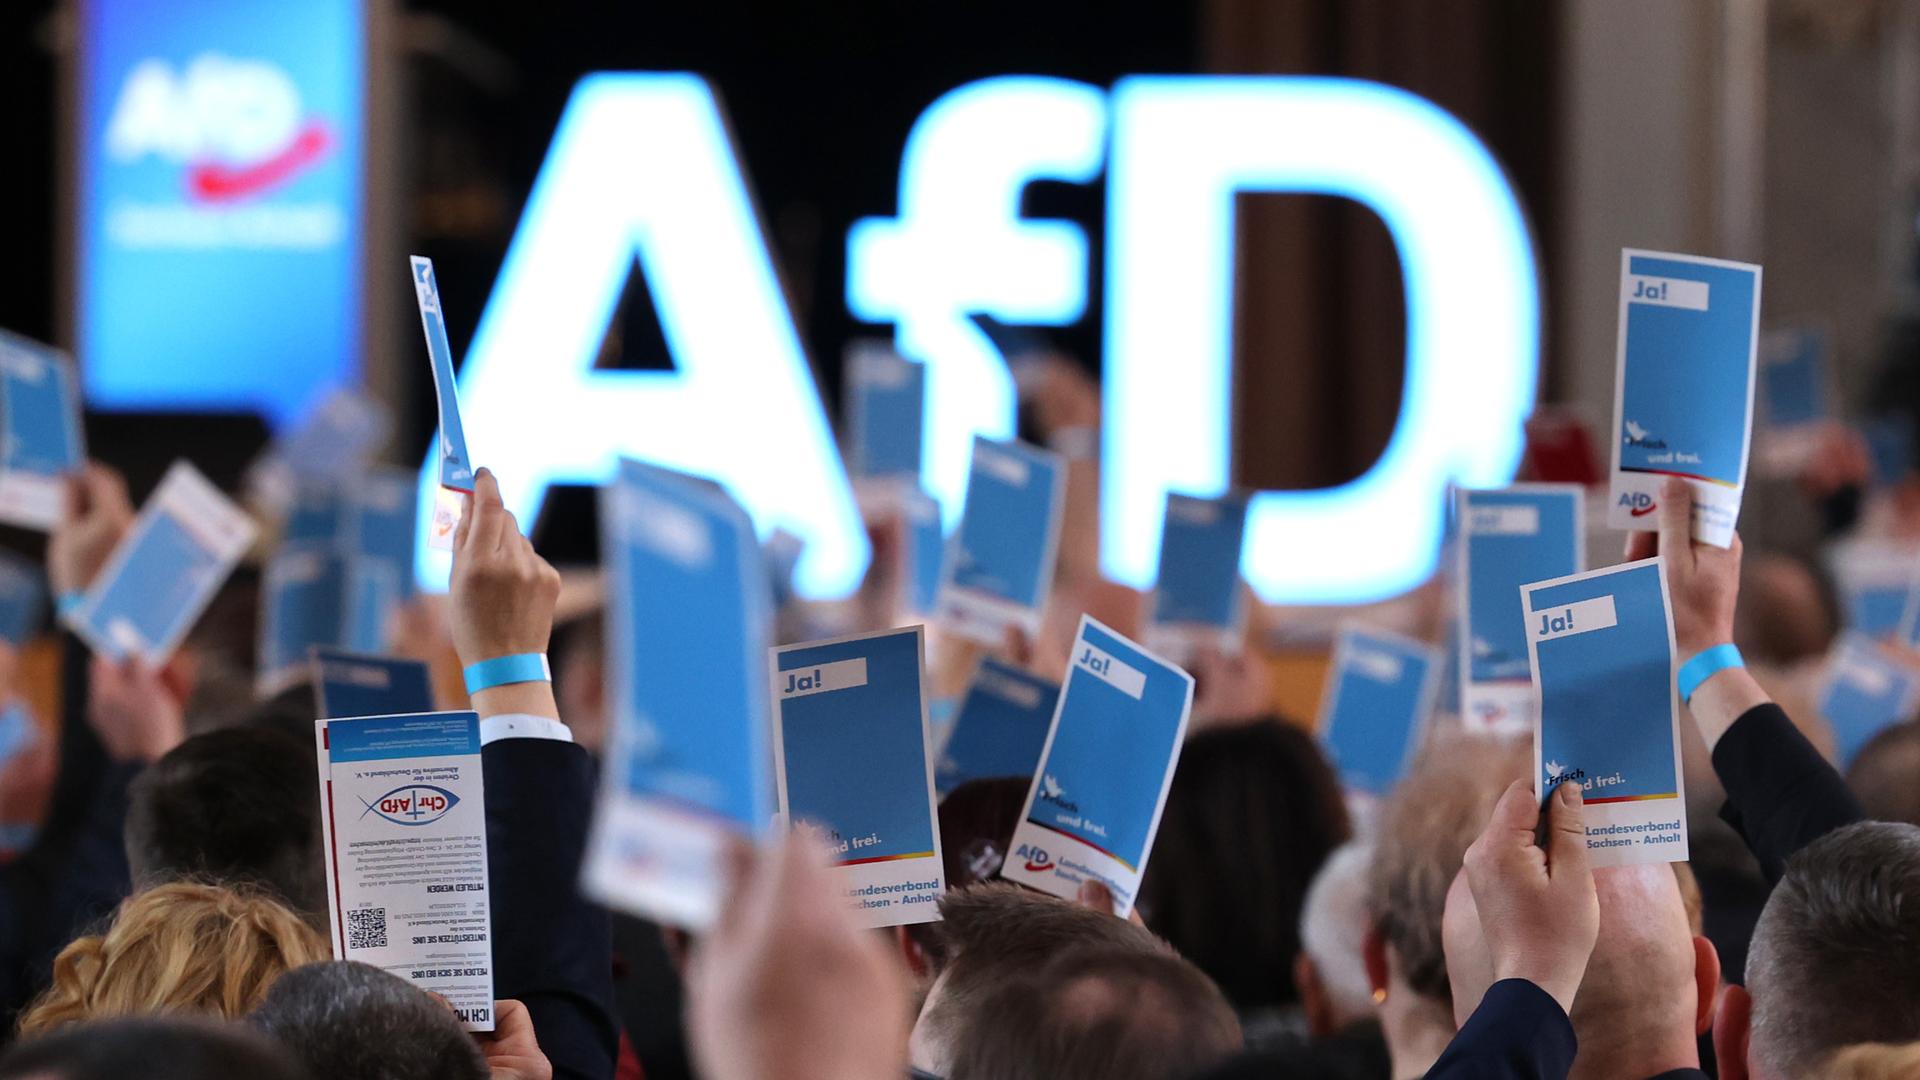 Delegierte stimmen auf dem Landesparteitag der AfD Sachsen-Anhalt ab, indem sie blaue Karten in die Höhe halten.